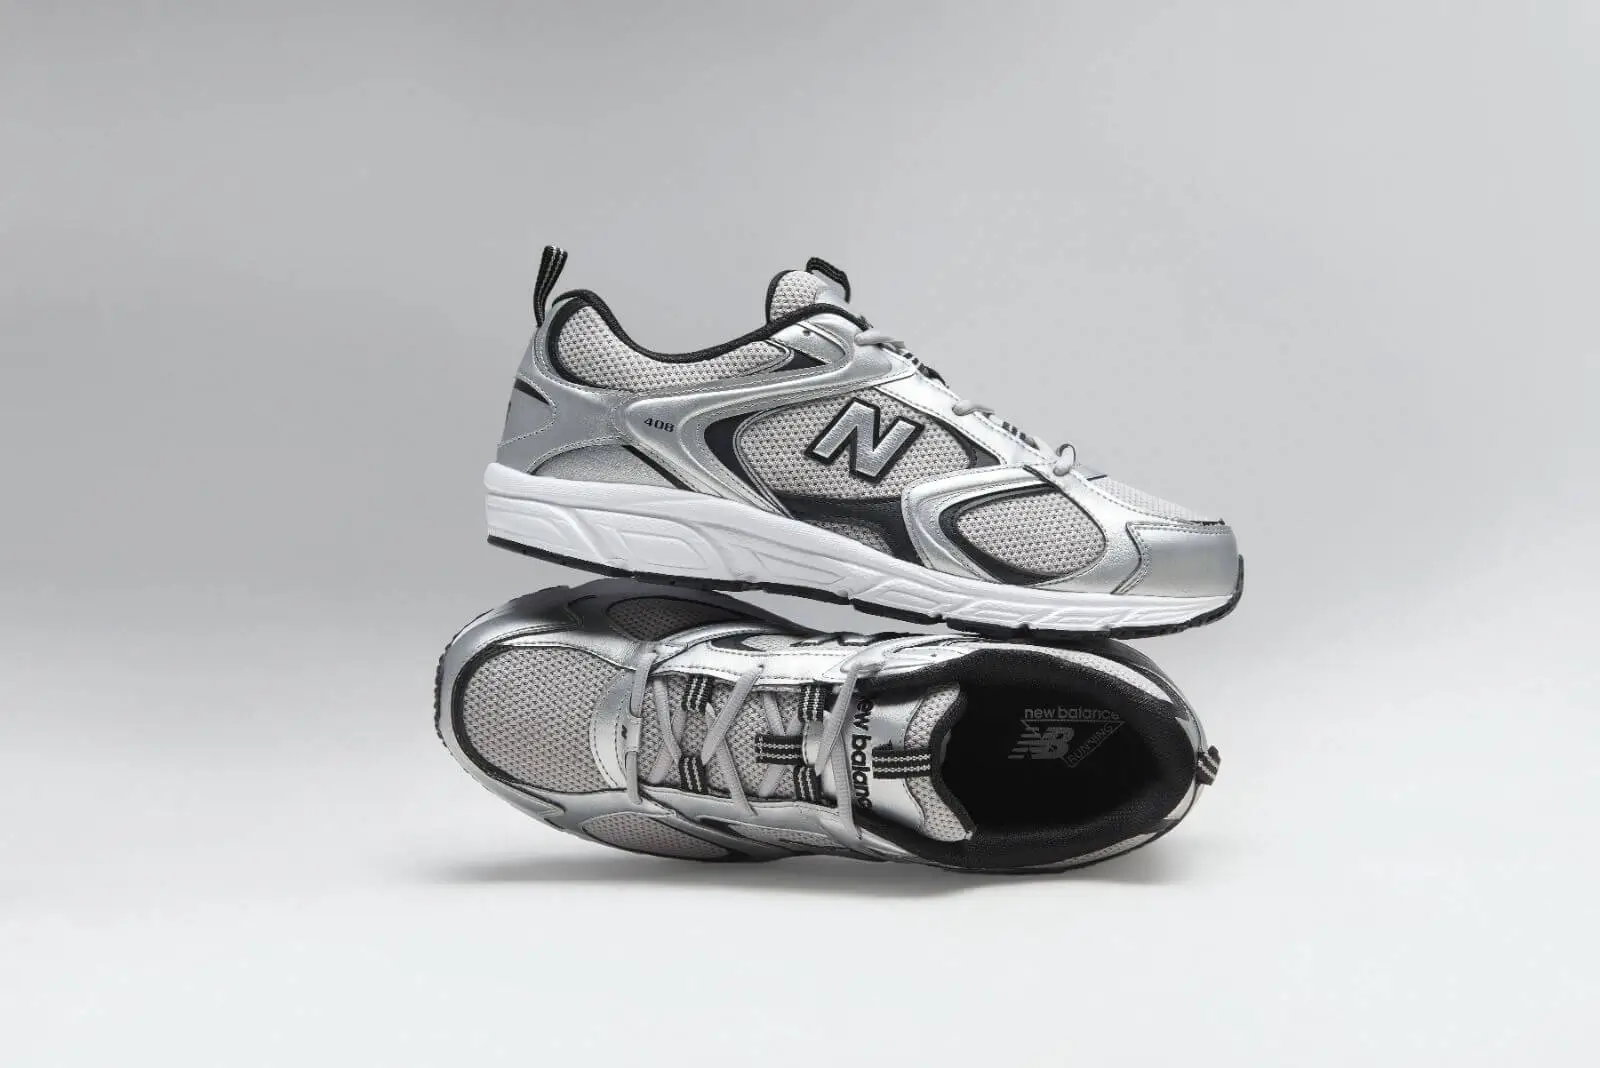 New Balance 408 Spor Ayakkabı Modeli ve Özellikleri